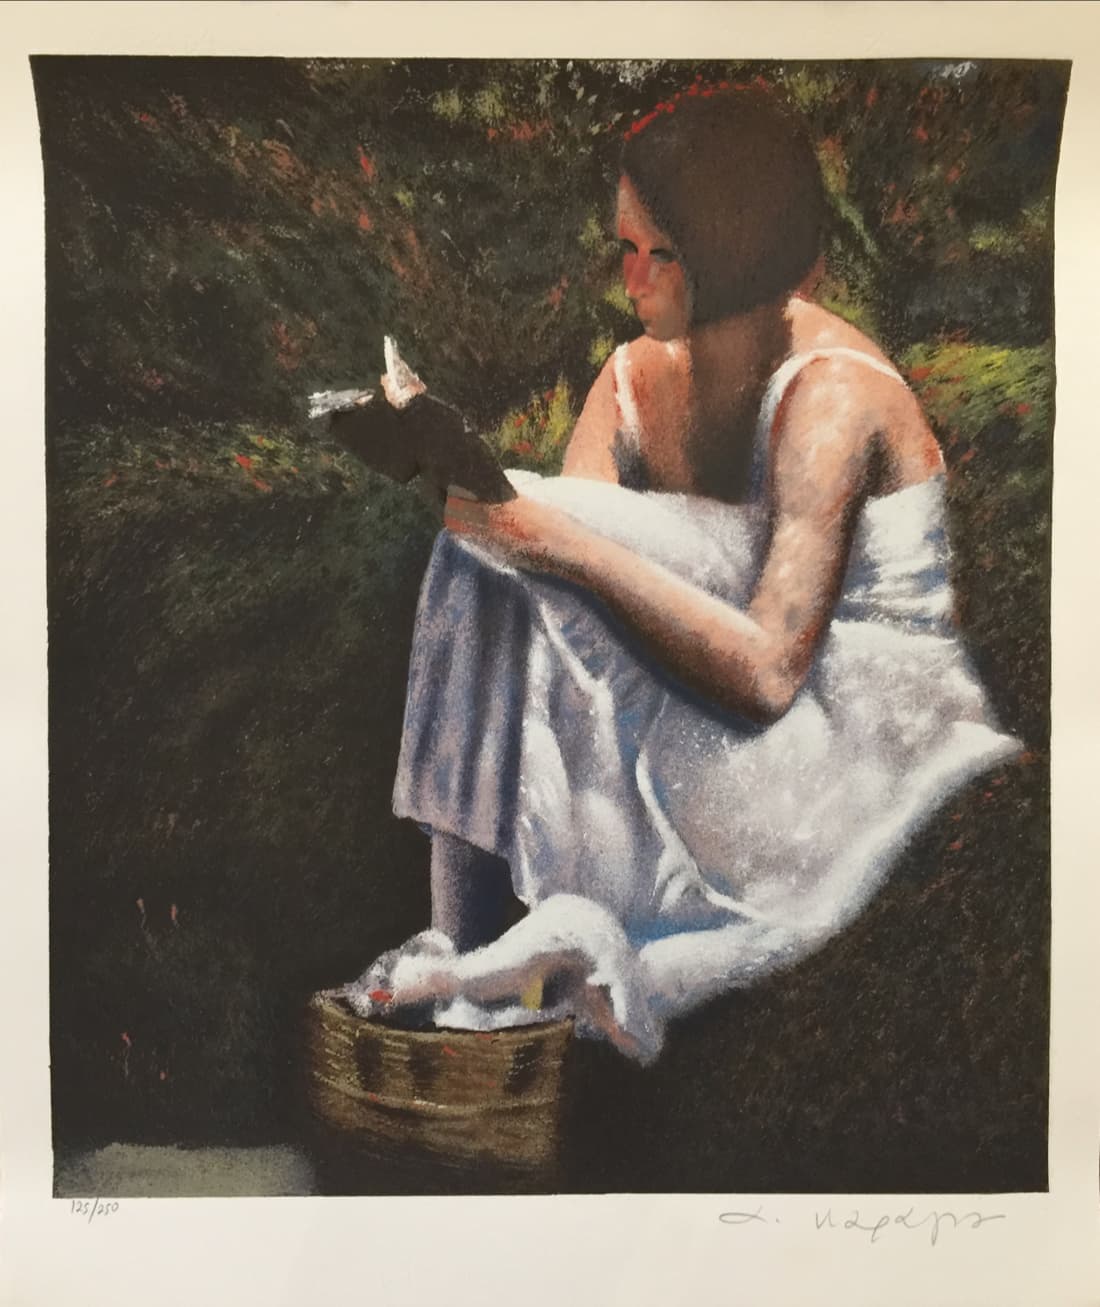 Karayan Andreas, Girl reading book, Silkscreen print, 70 x 70 cm